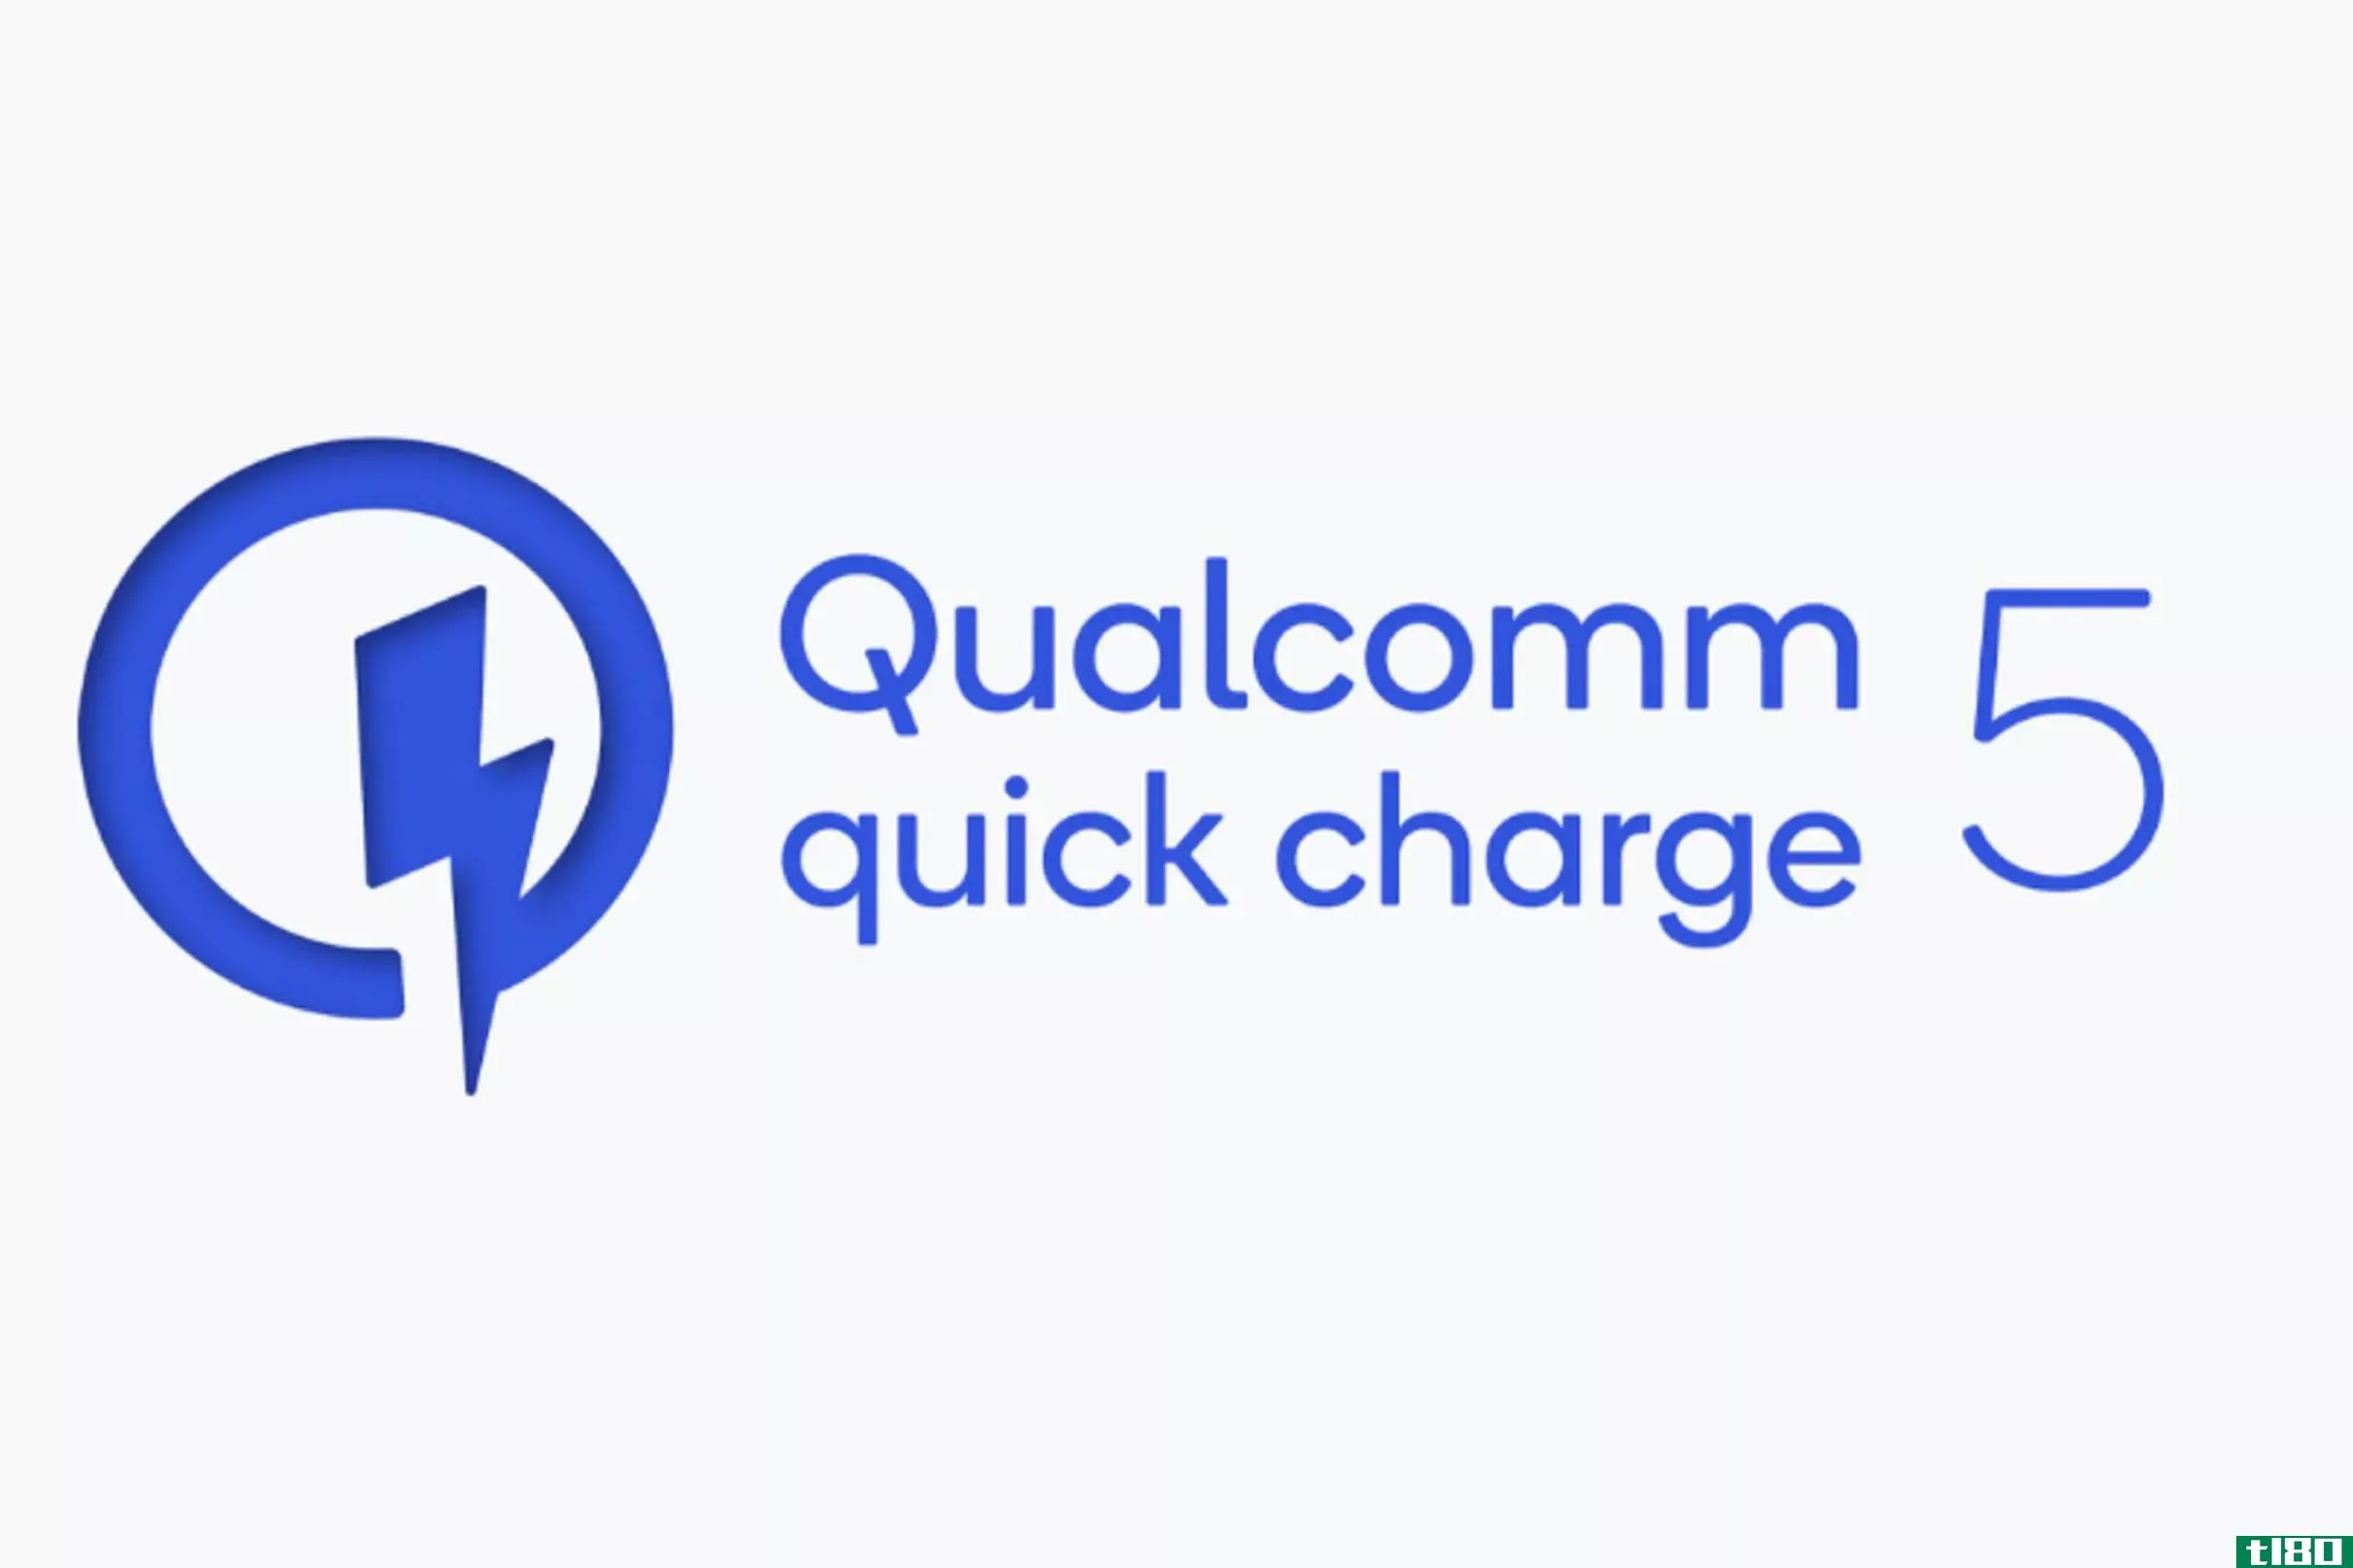 高通公司的quick charge 5标准承诺在不到5分钟内充电50%